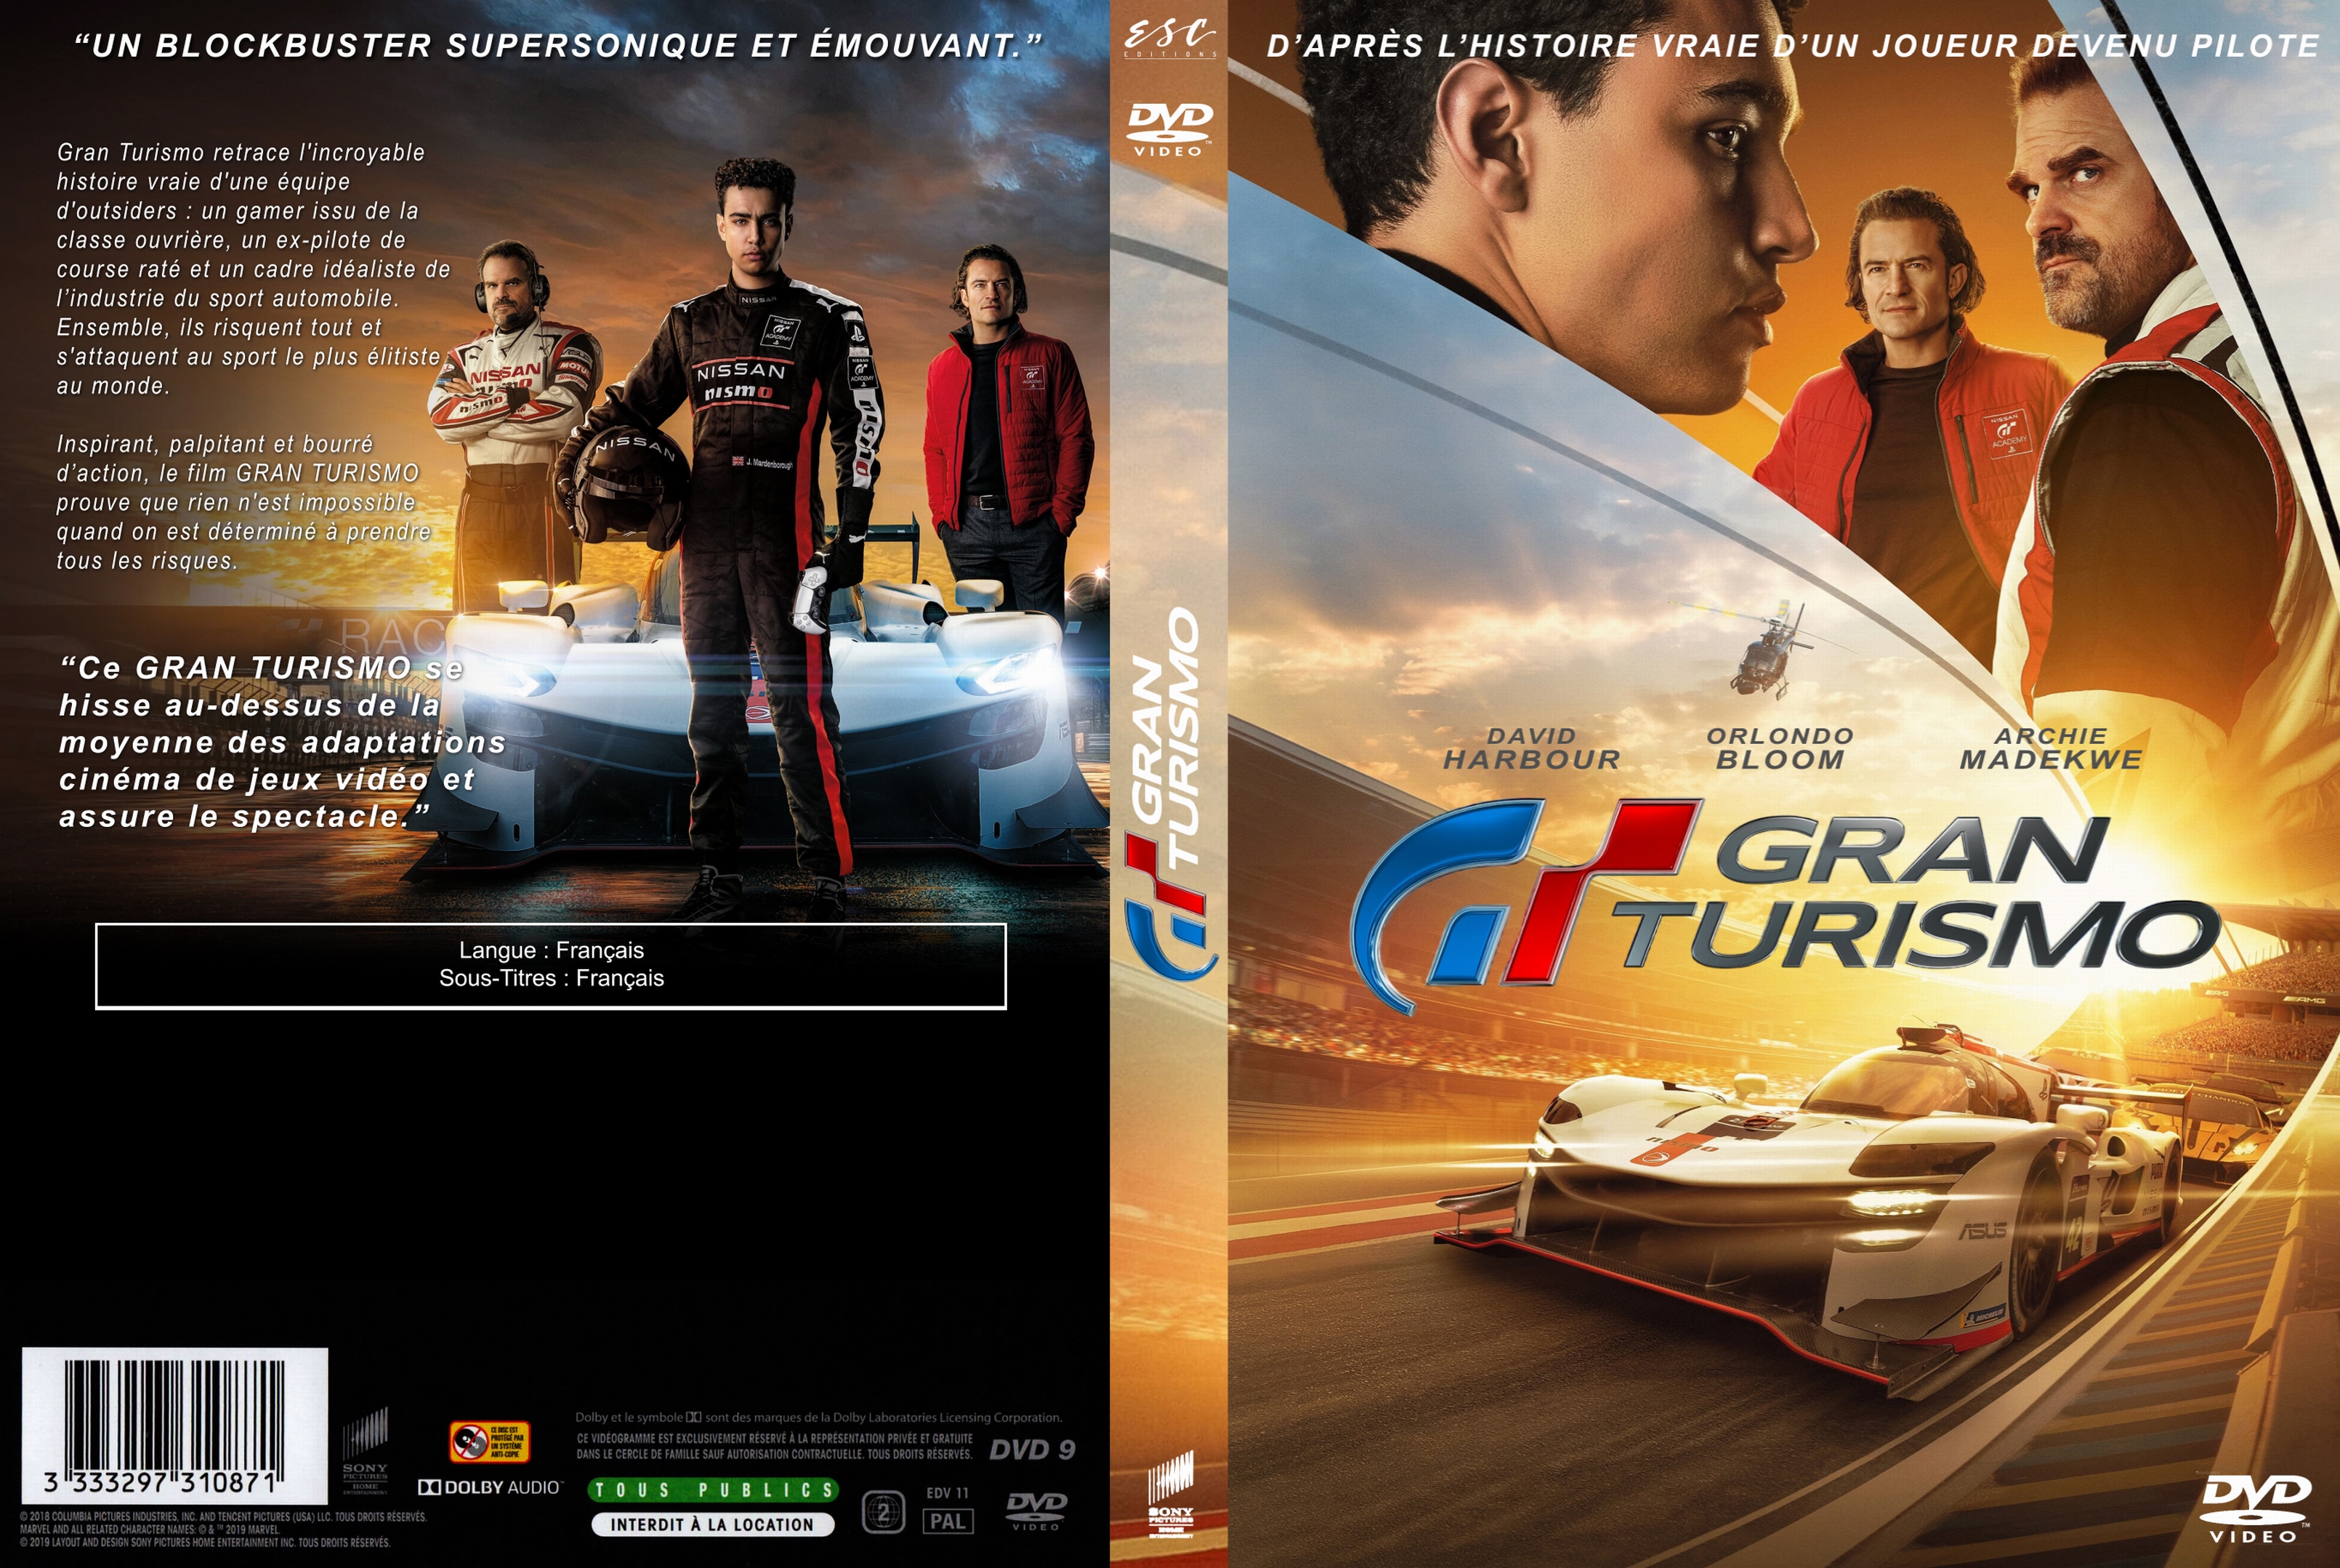 Jaquette DVD Gran Turismo custom